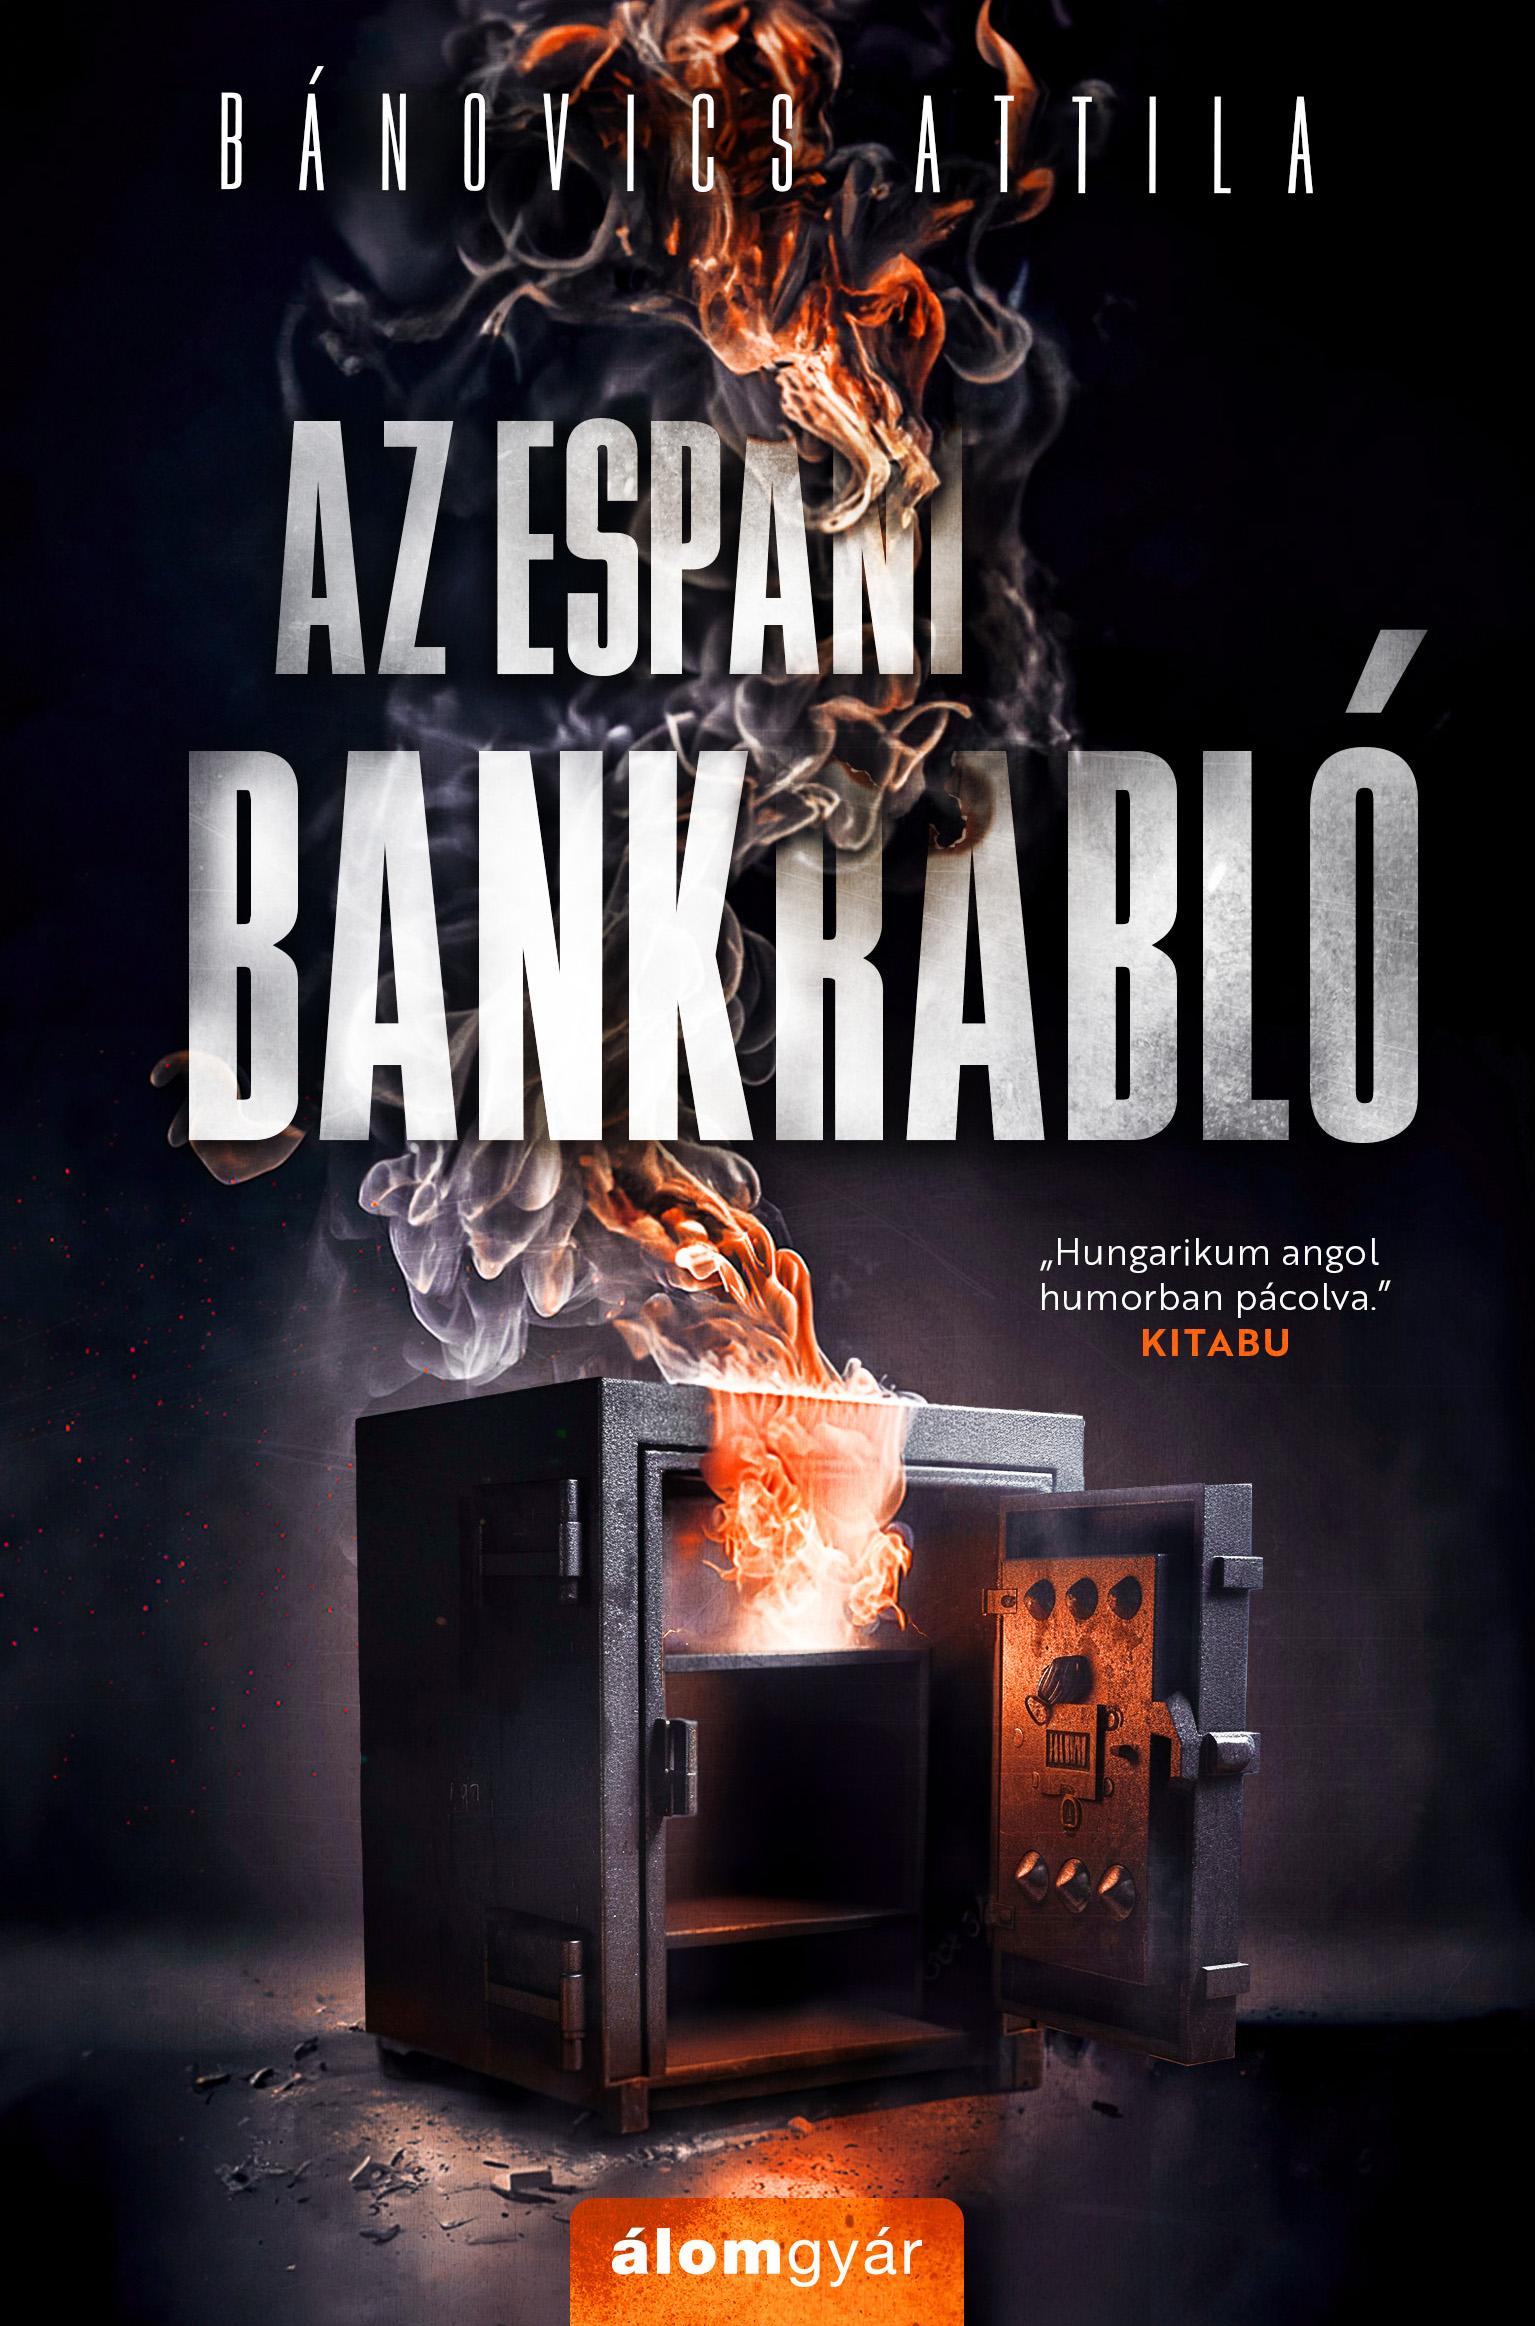 Az espani bankrabló